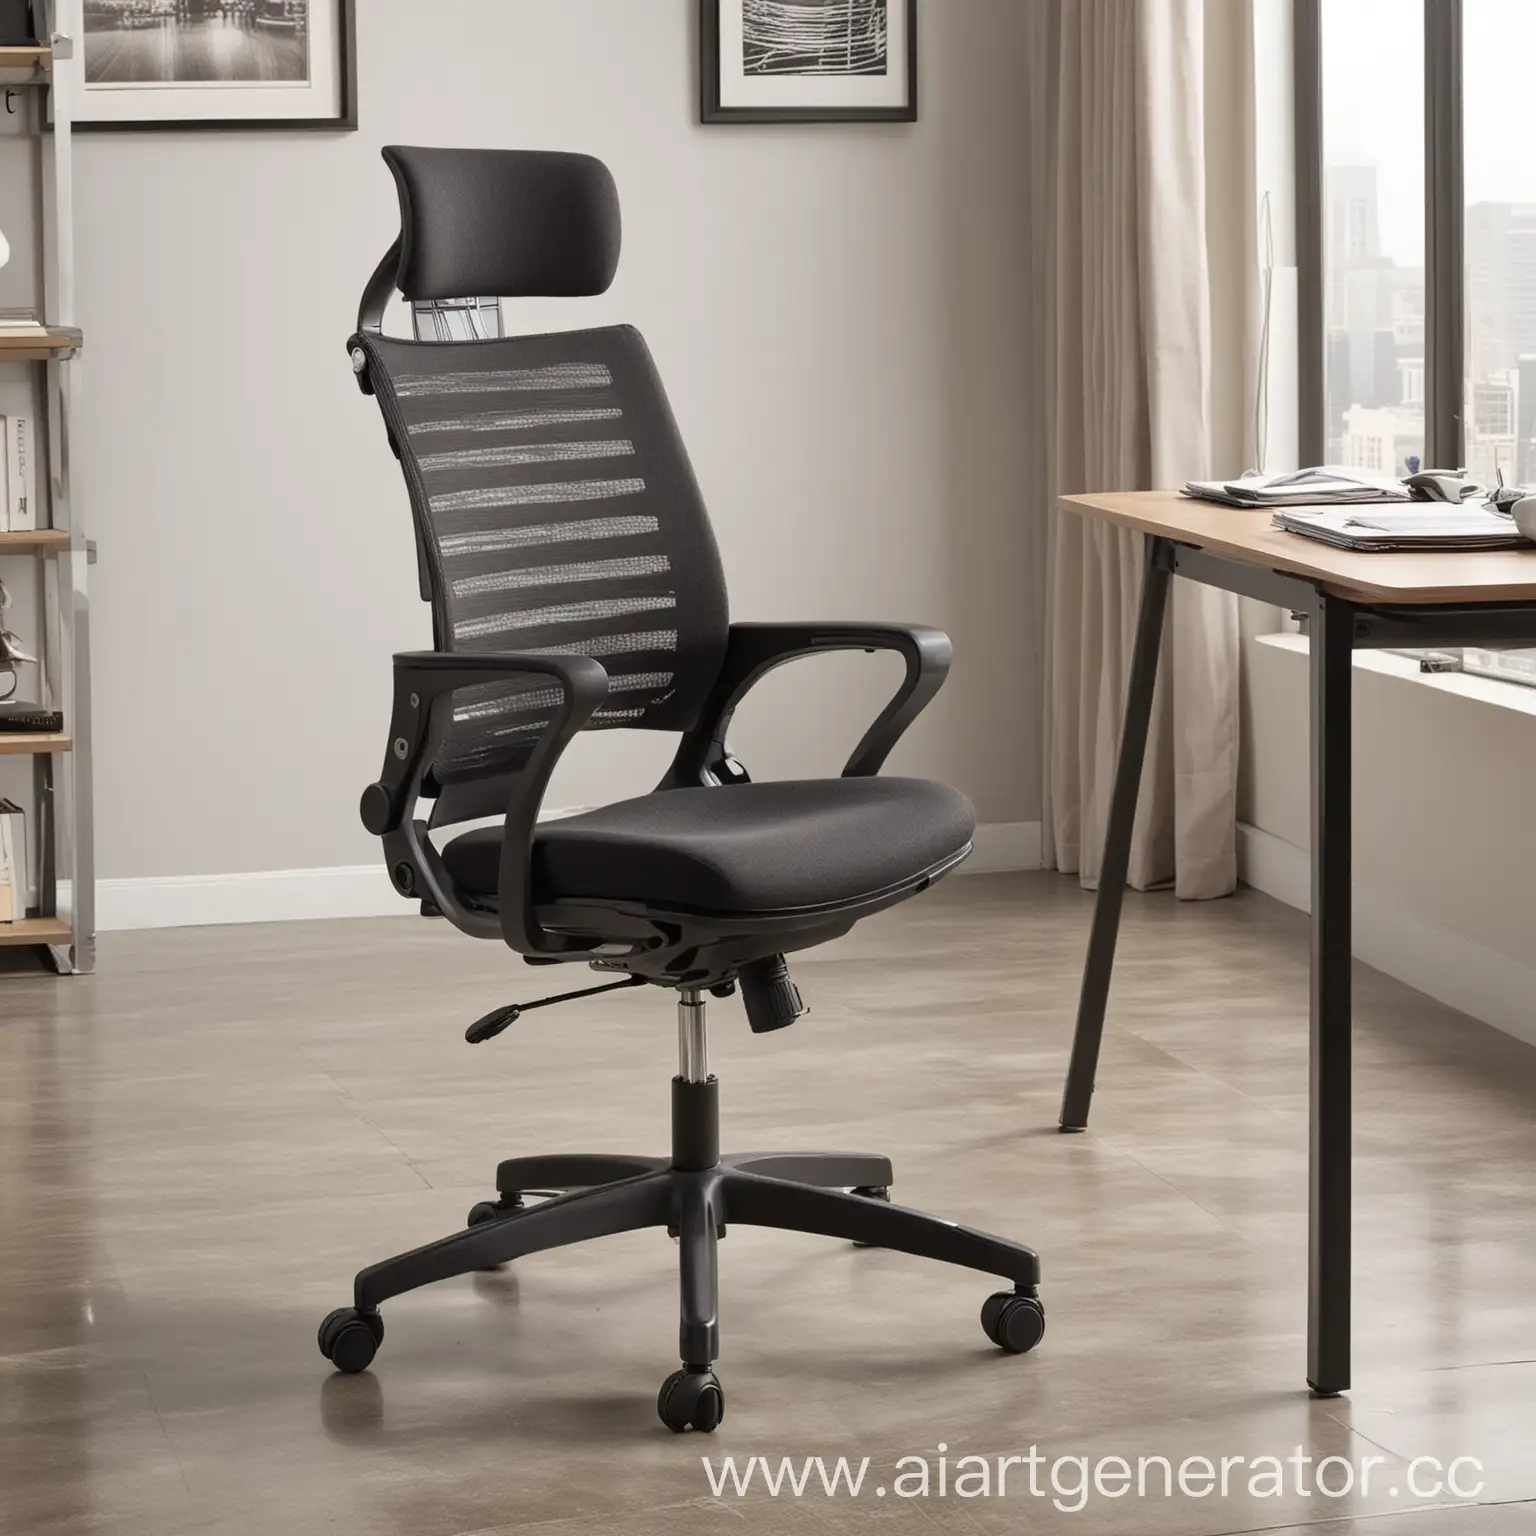 Изобрази эргономичное современное кресло для офиса